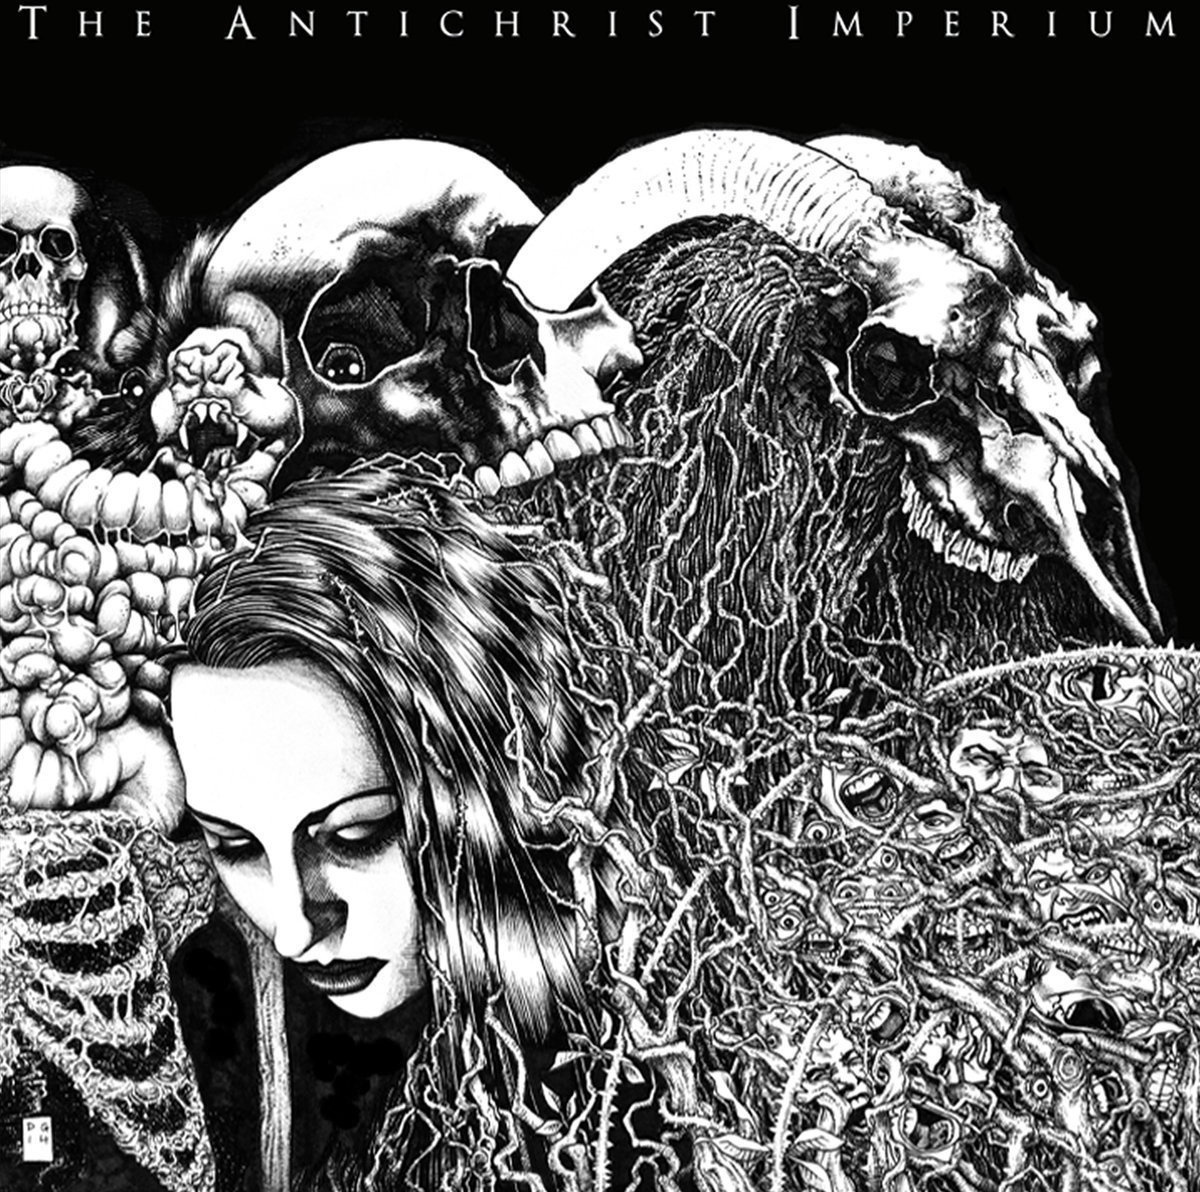 Vinyl Record The Antichrist Imperium - The Antichrist Imperium (LP)